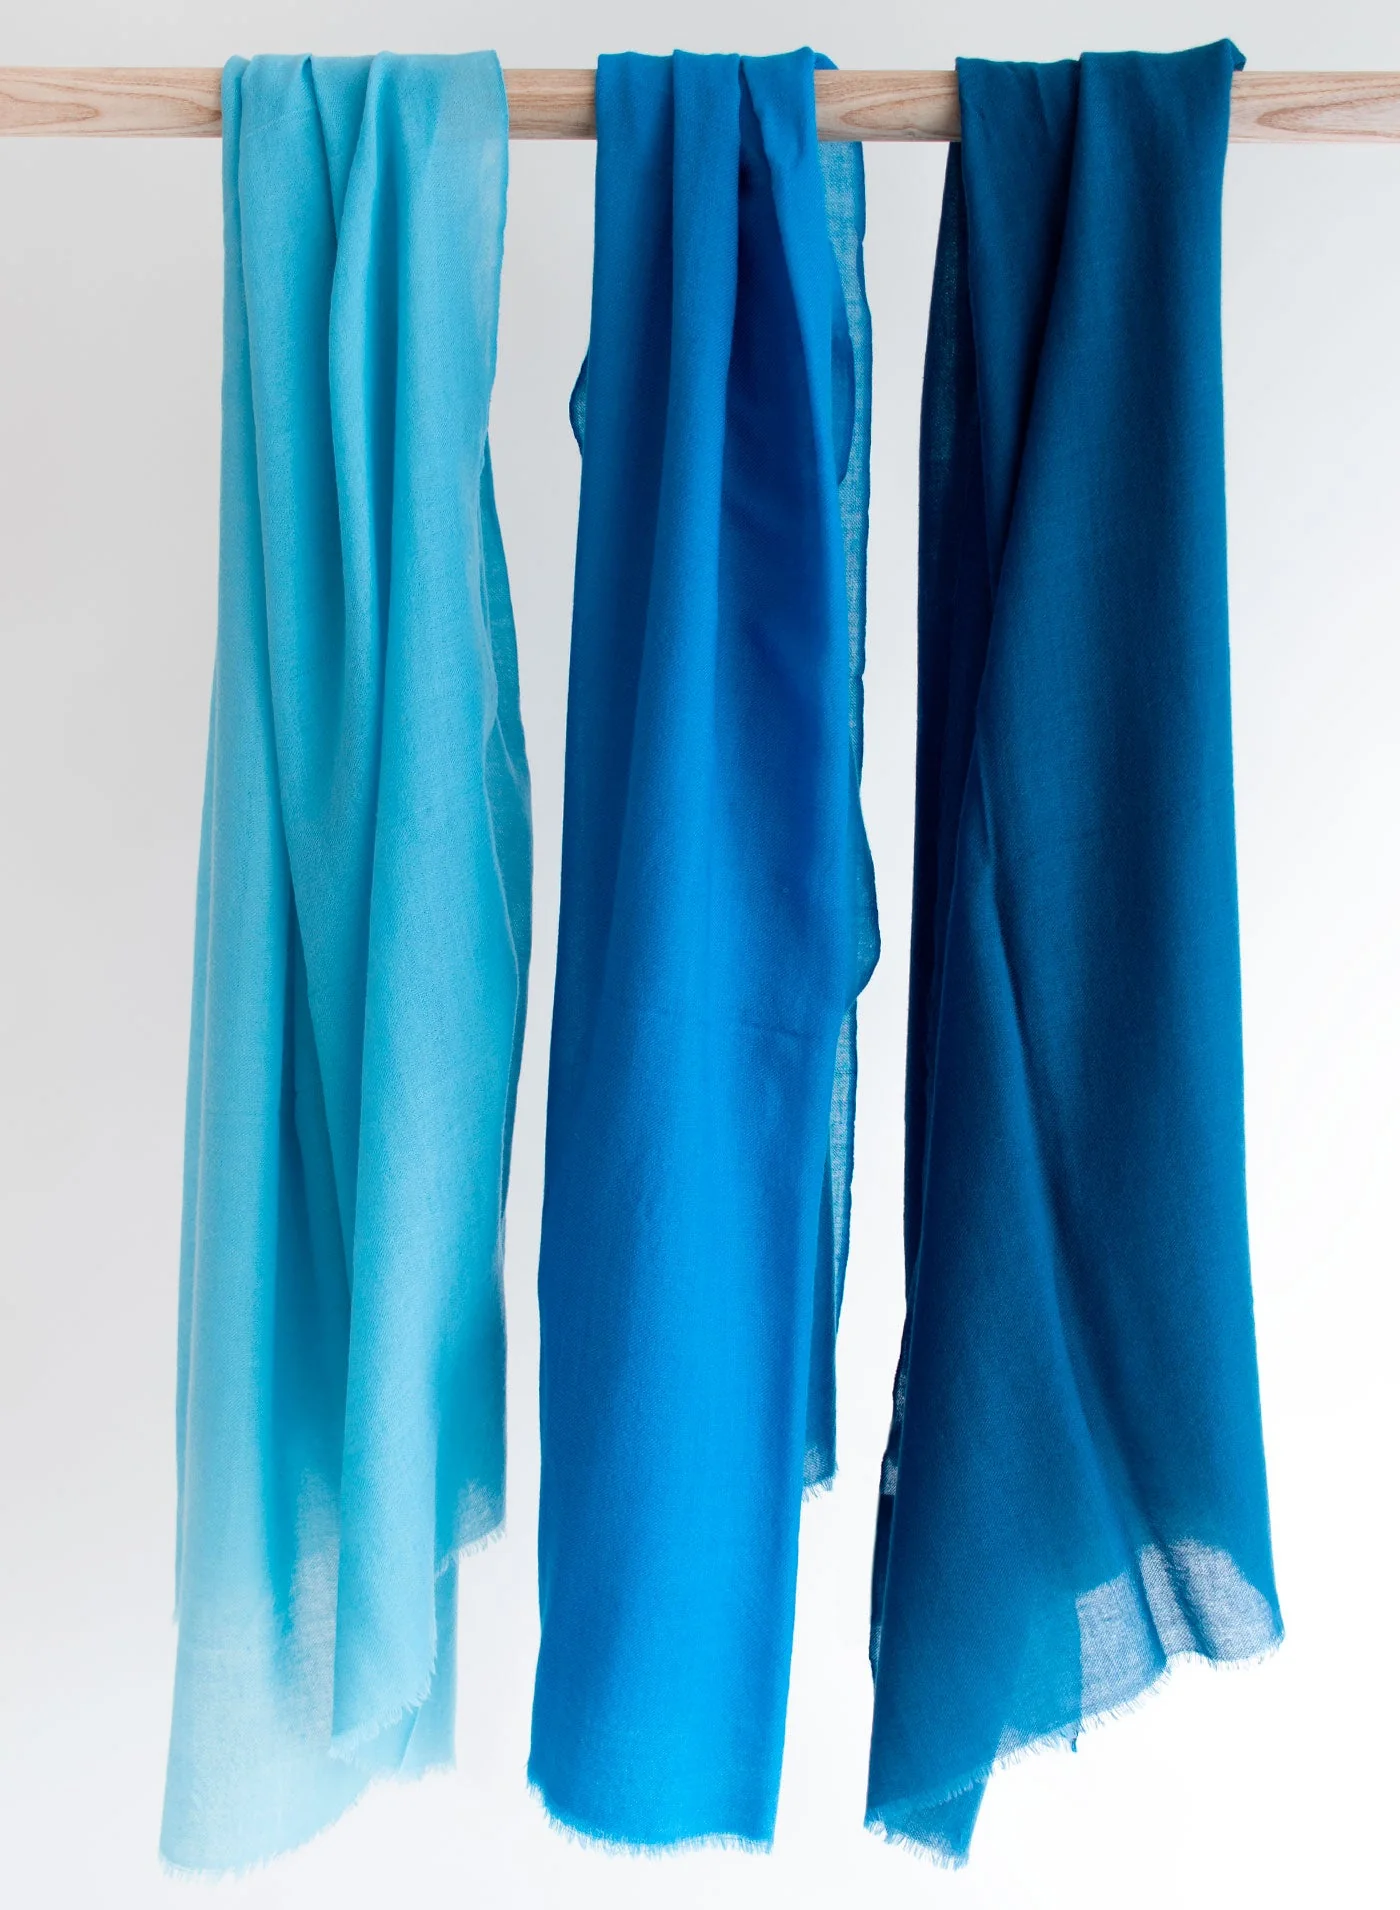 Schal Wolle 5013 blue 70x180